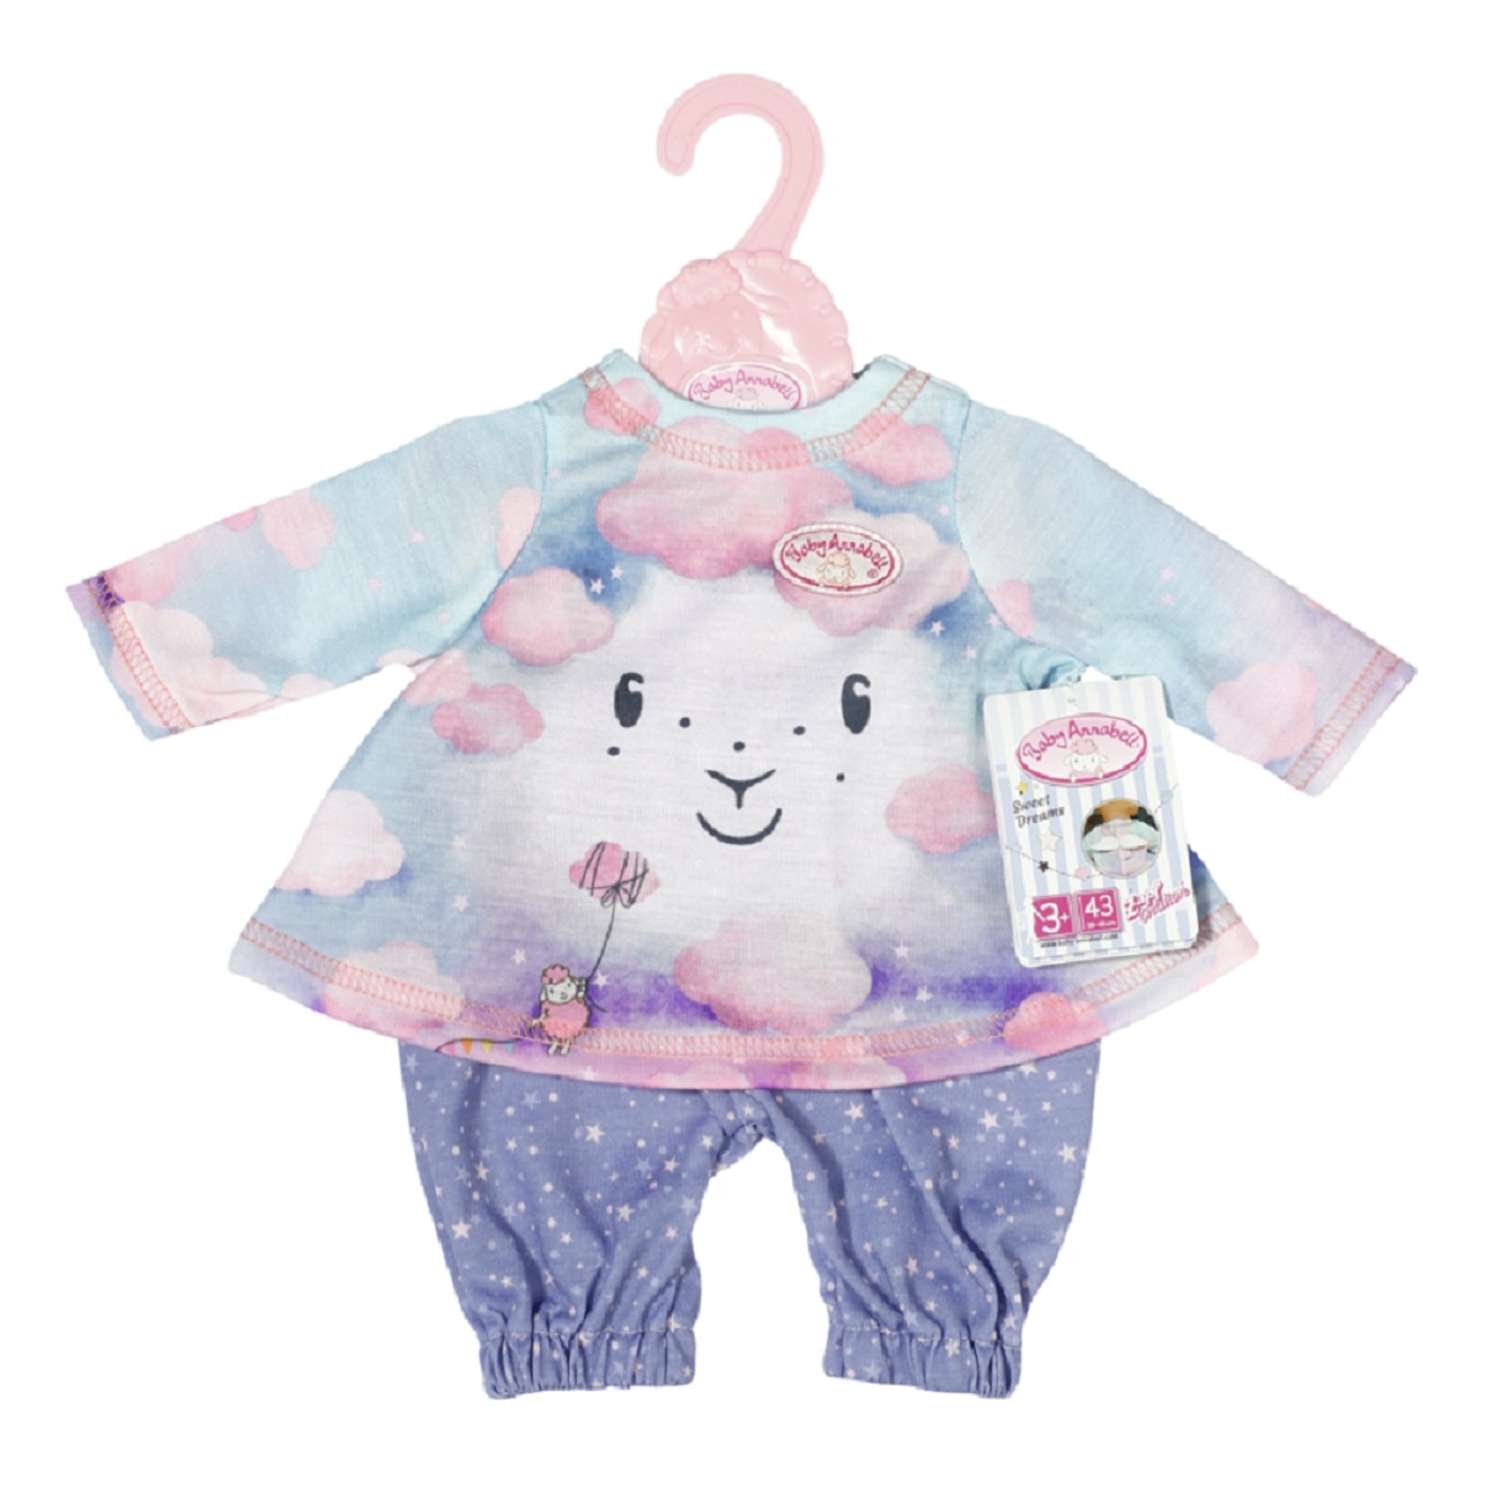 Набор одежды для куклы Zapf Creation Baby Annabell для сладких снов 703-199 - фото 1